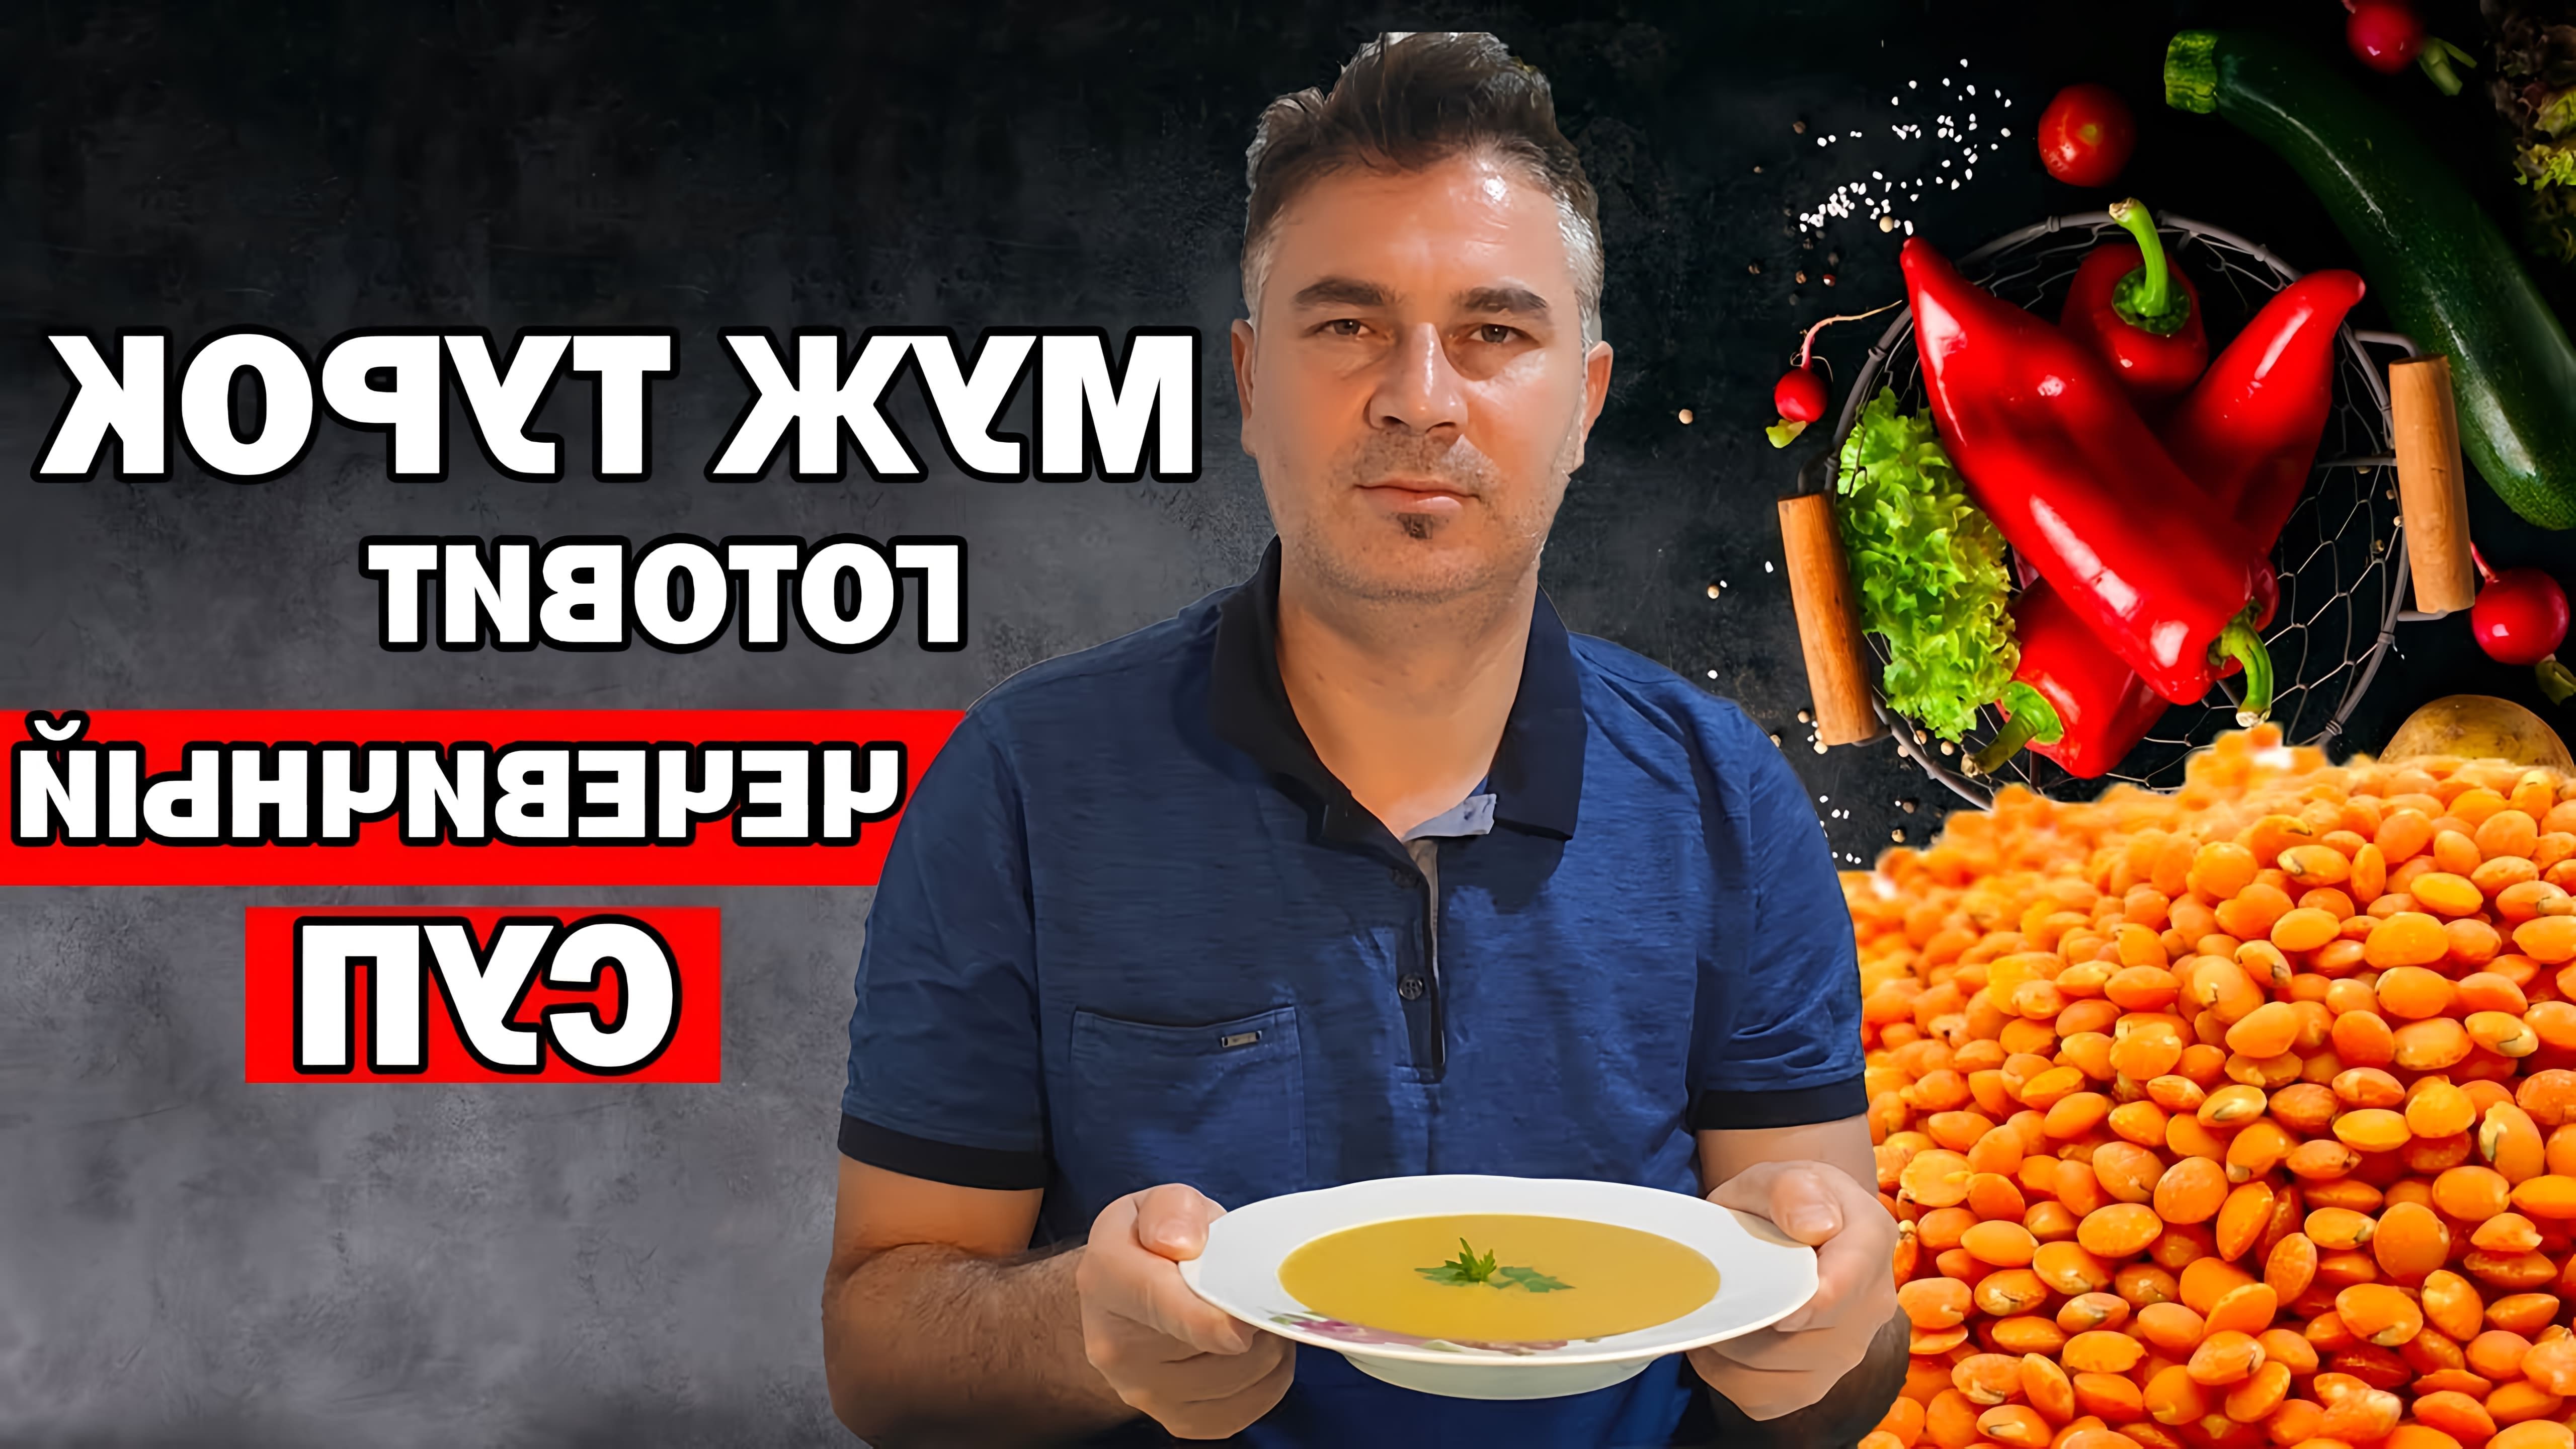 В этом видео мужчина-турок показывает, как приготовить чечевичный суп, который является популярным блюдом в Турции